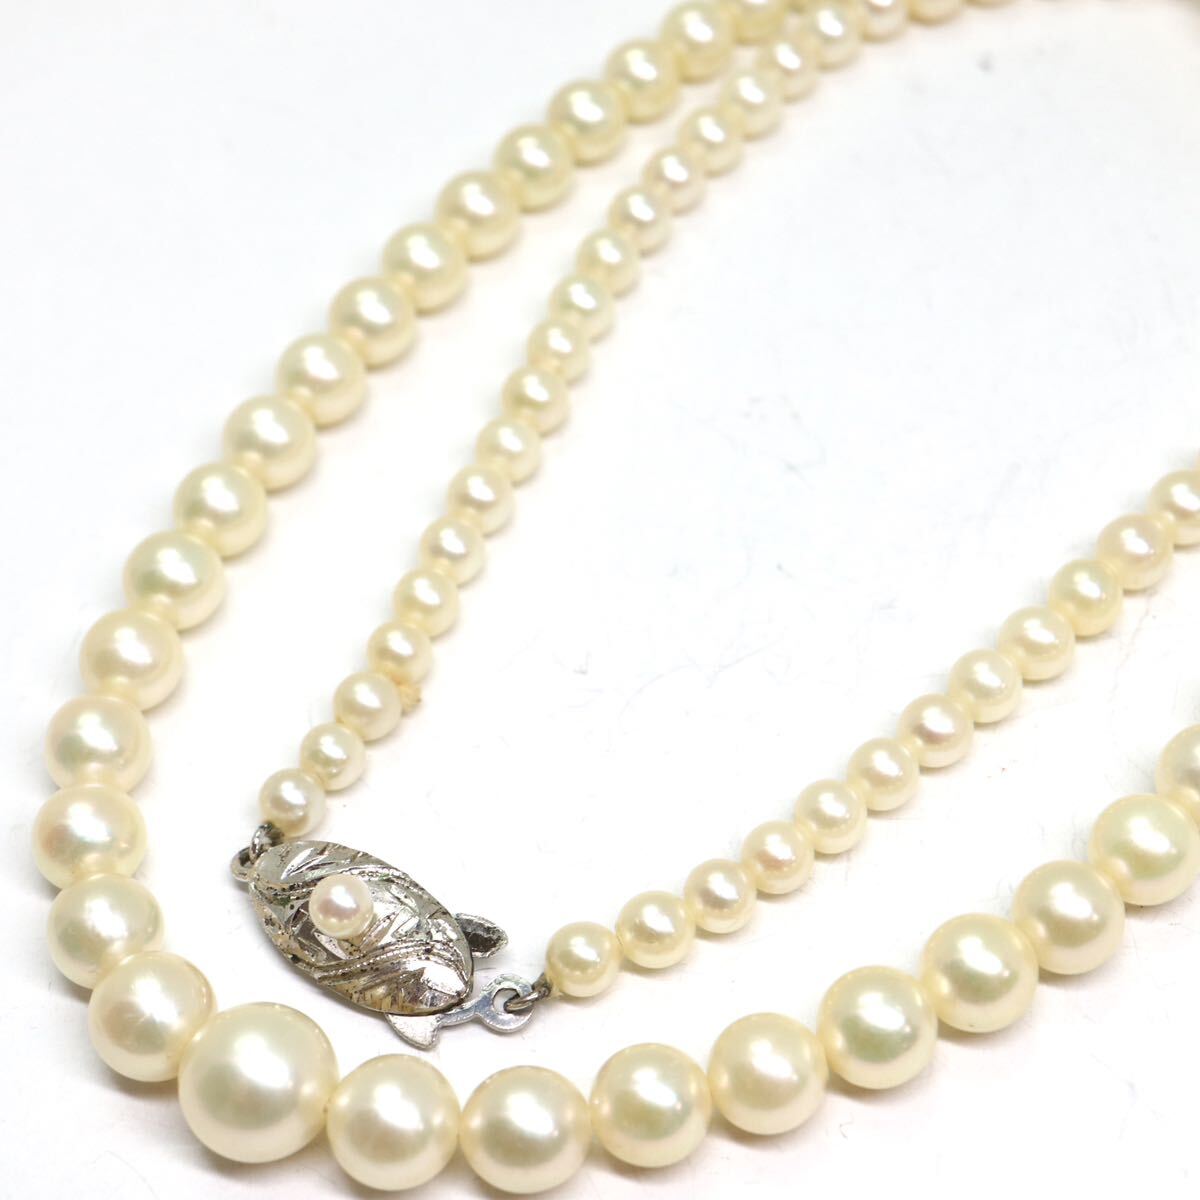 《アコヤ本真珠ネックレス》A 約3.5-7.5mm珠 14.9g 約44cm pearl necklace ジュエリー jewelry CC0/CC0の画像1